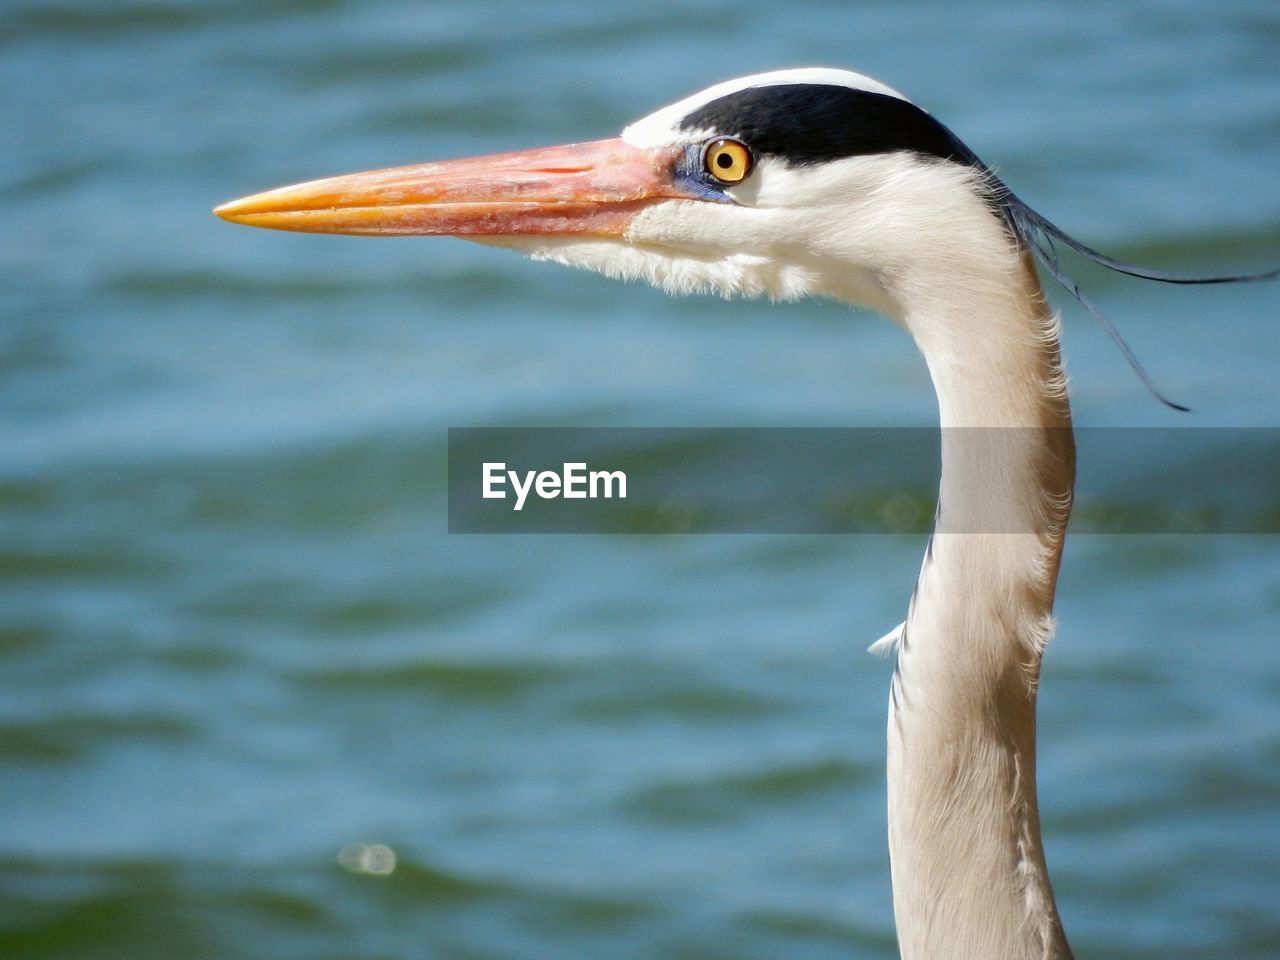 Close-up of a heron